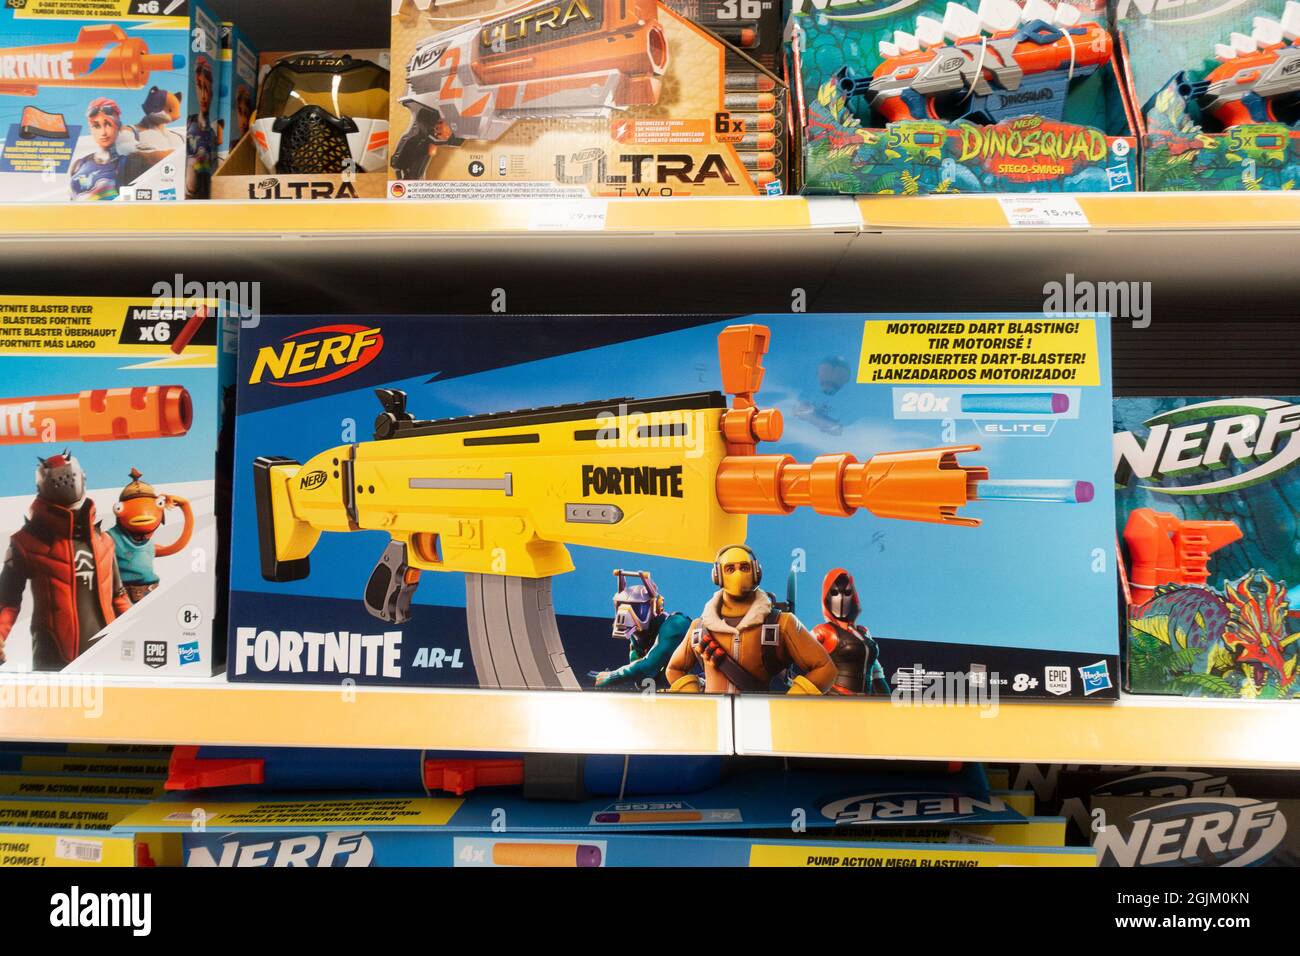 Fortnite NERF blaster guns for children in toy store Stock Photo - Alamy